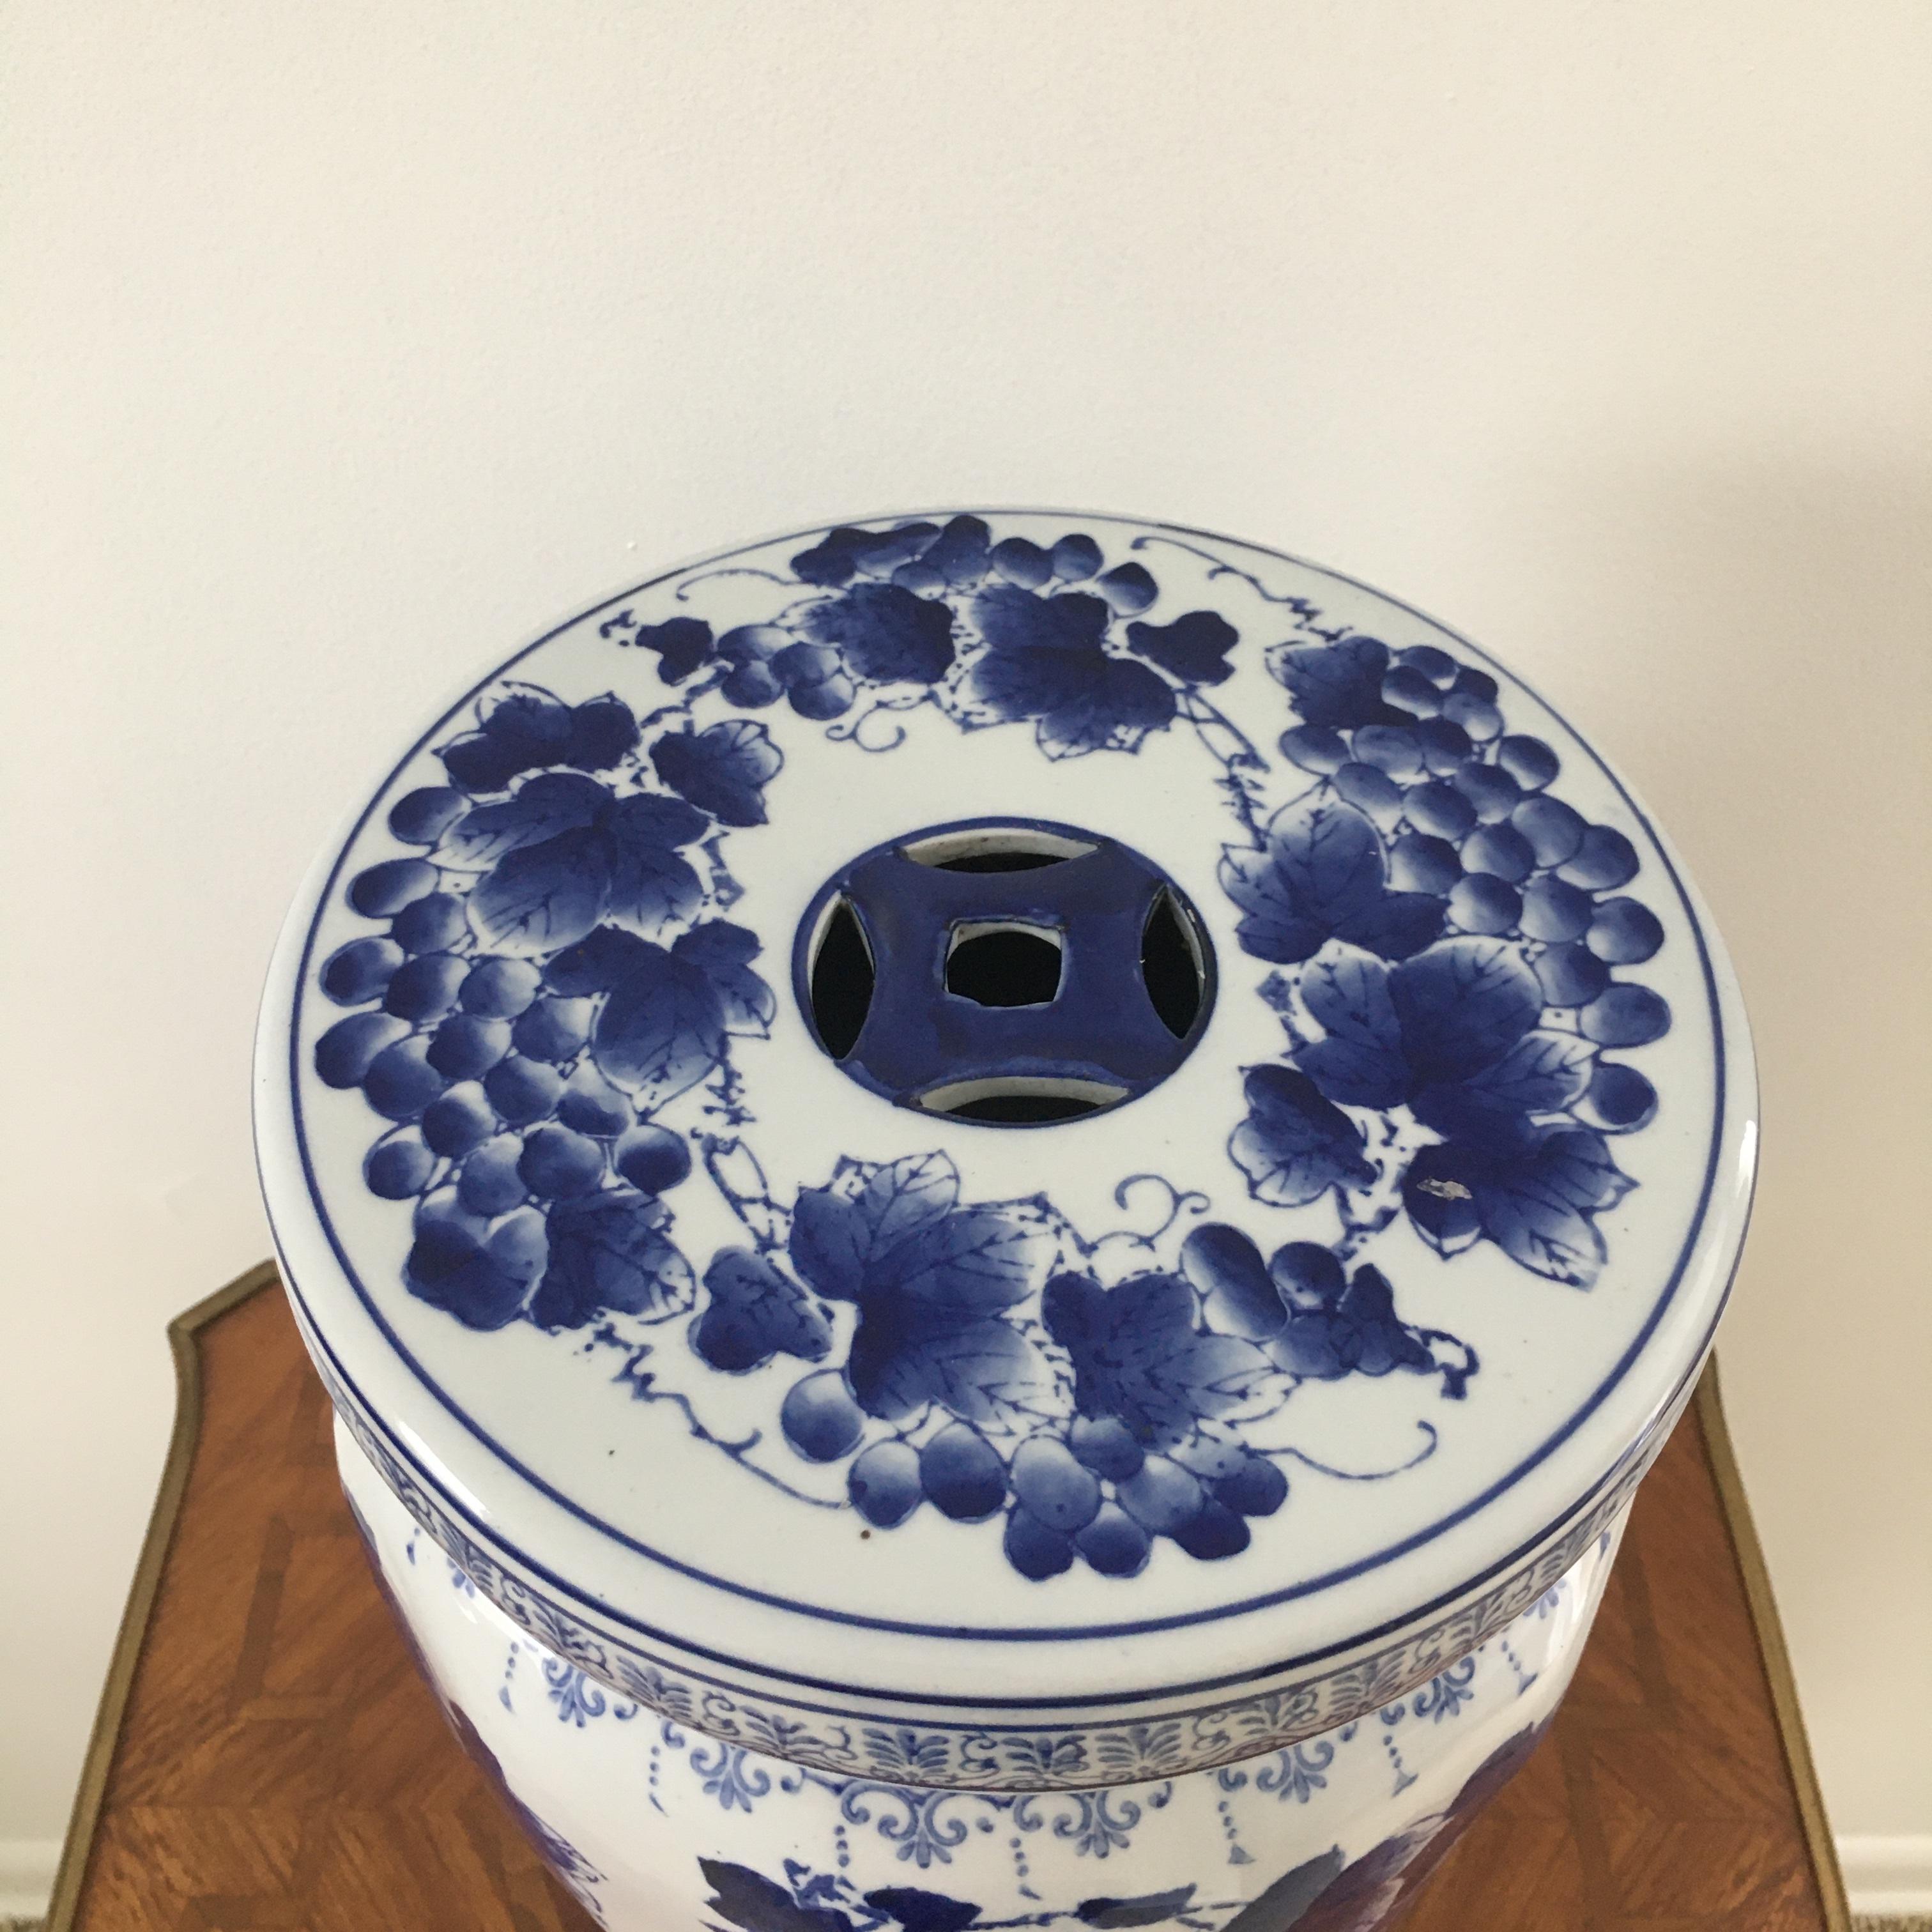 Charmant tabouret de jardin chinois en porcelaine bleue et blanche à motif de raisins.

Mesures : 10.5 